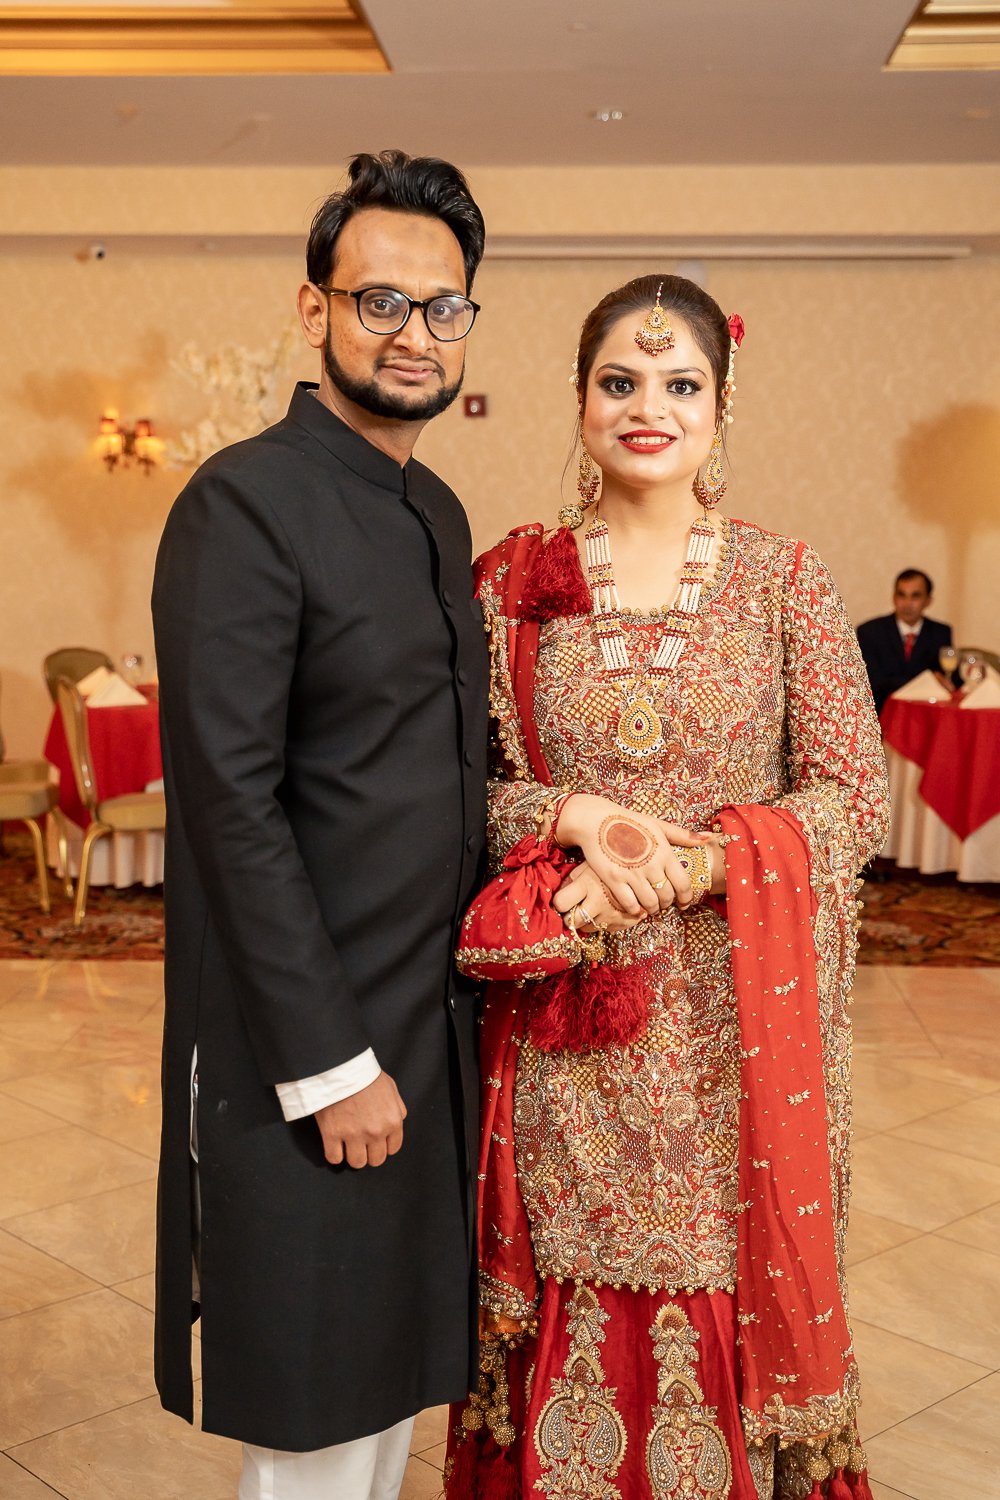 Pakistani-Edison-NJ-wedding-Mirchi-32.jpg